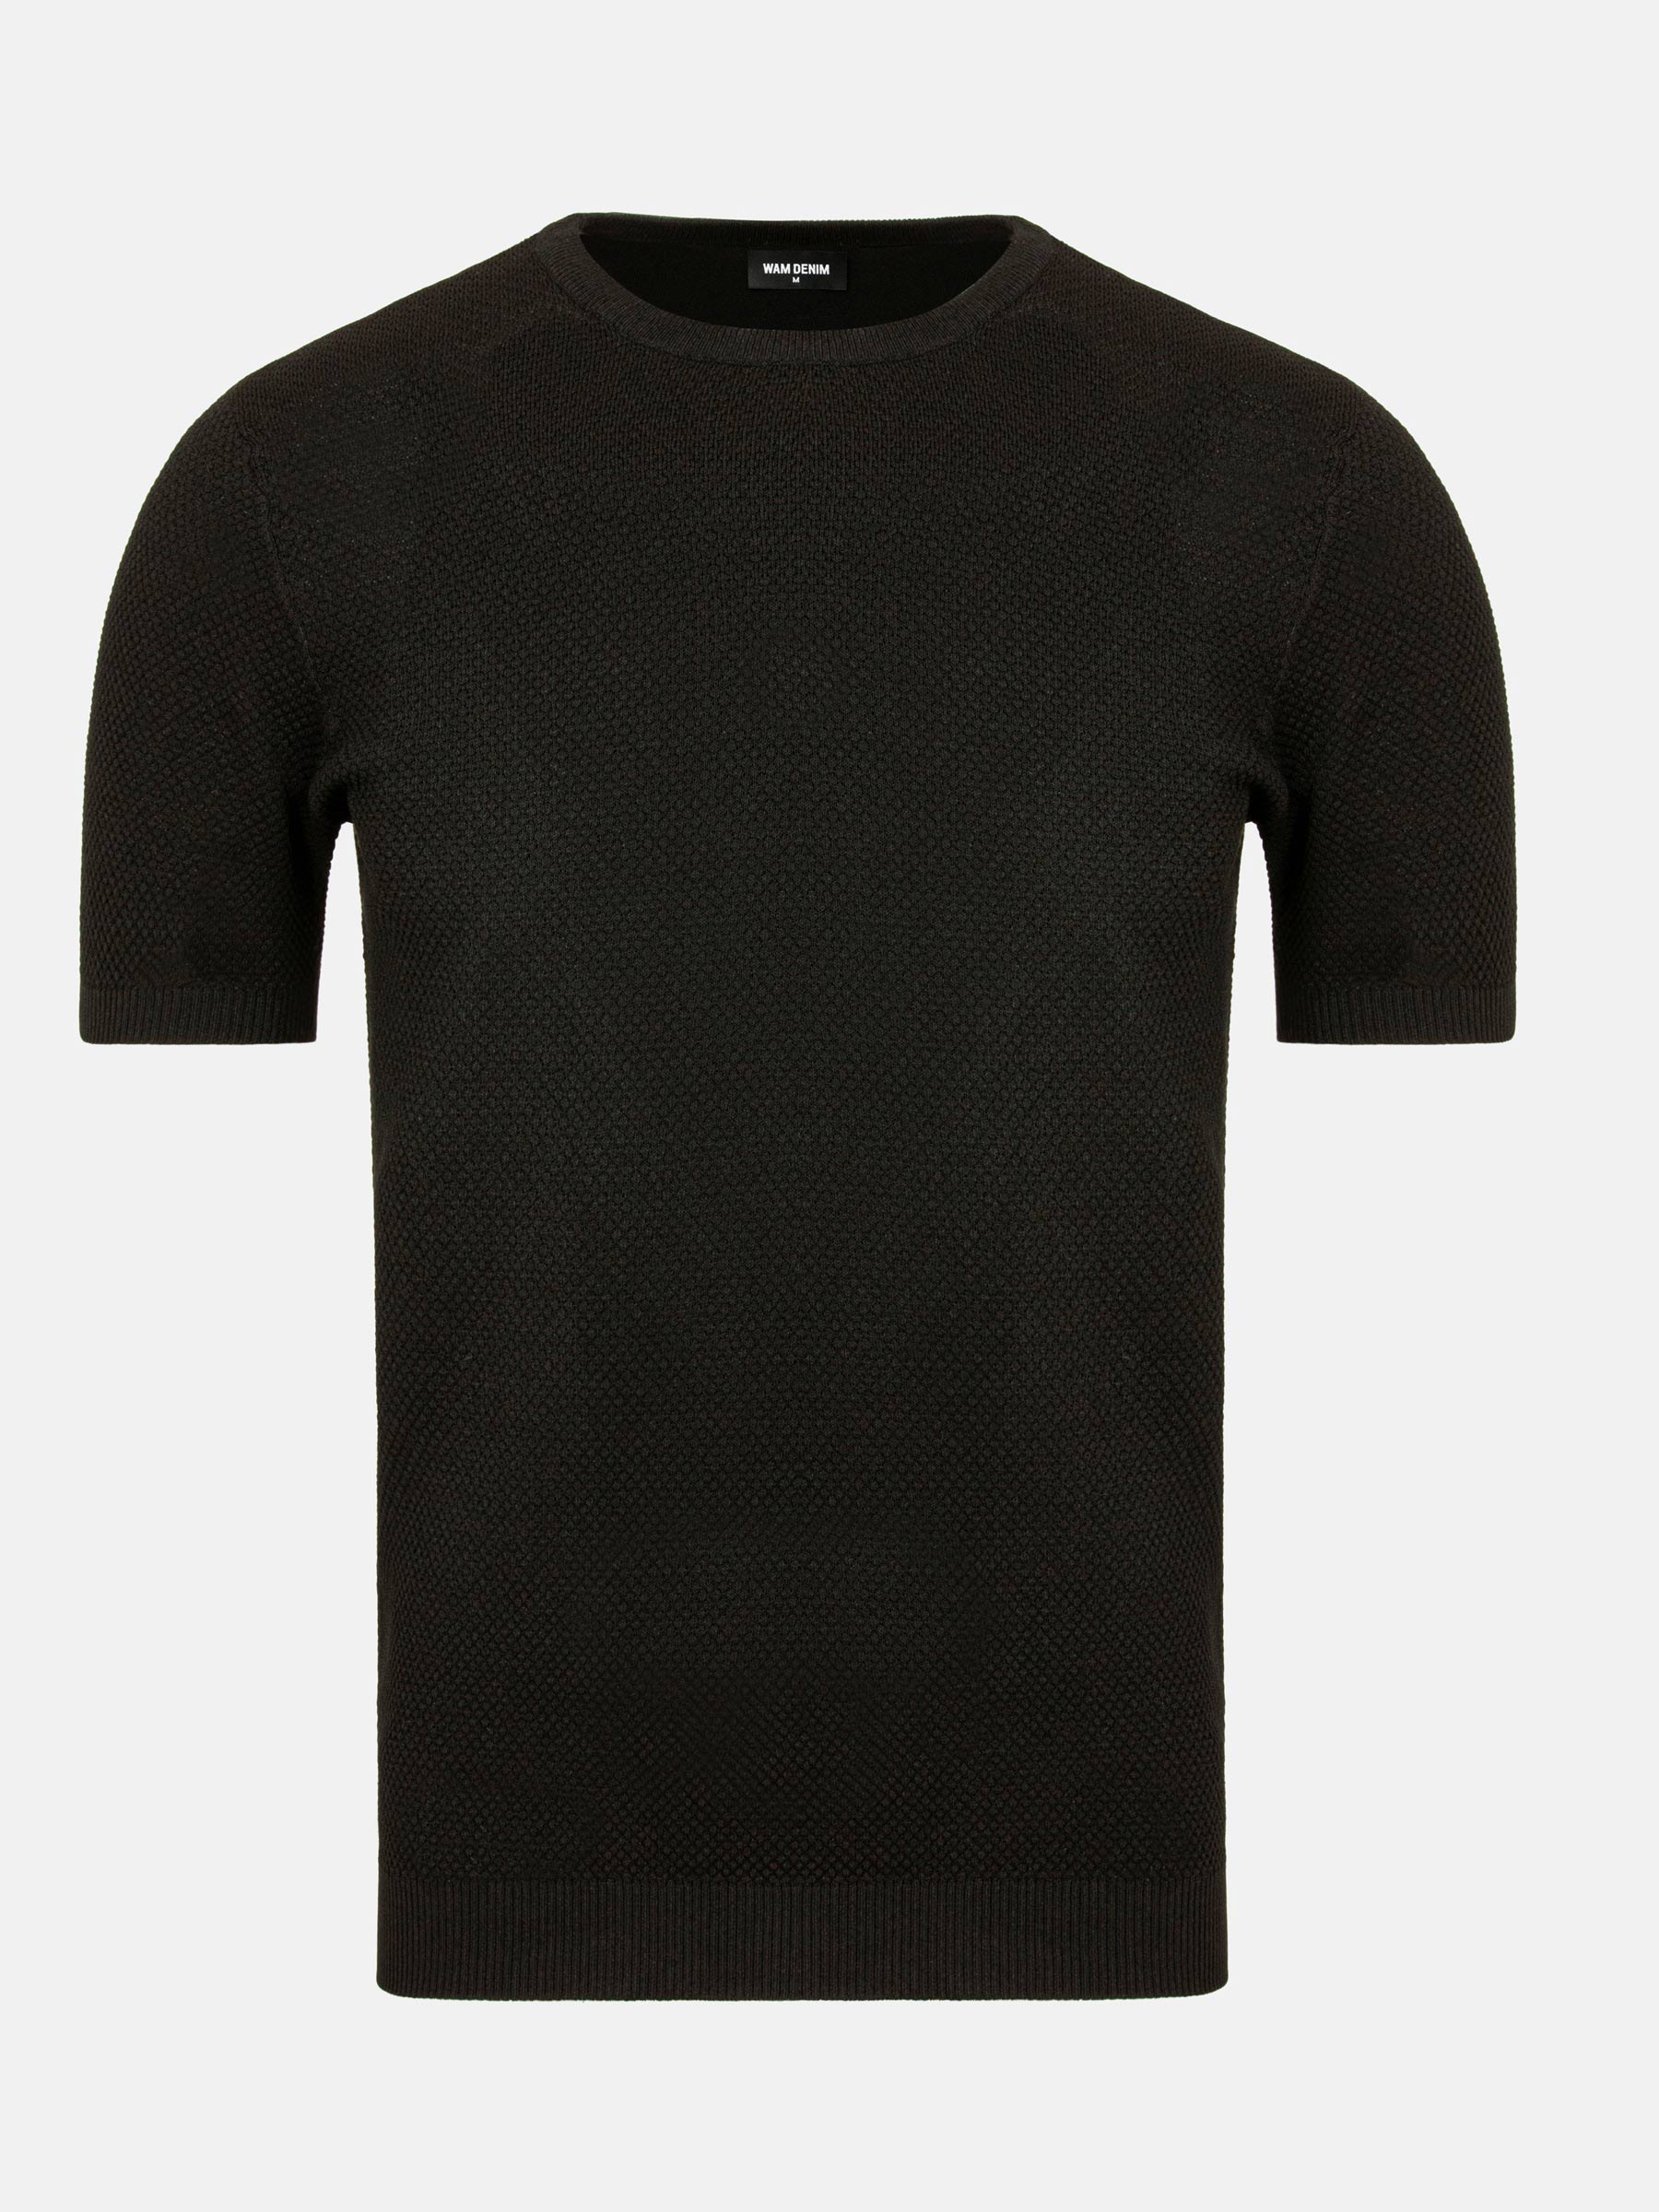 WAM Denim Lucas Pique Knit Black T-Shirt-